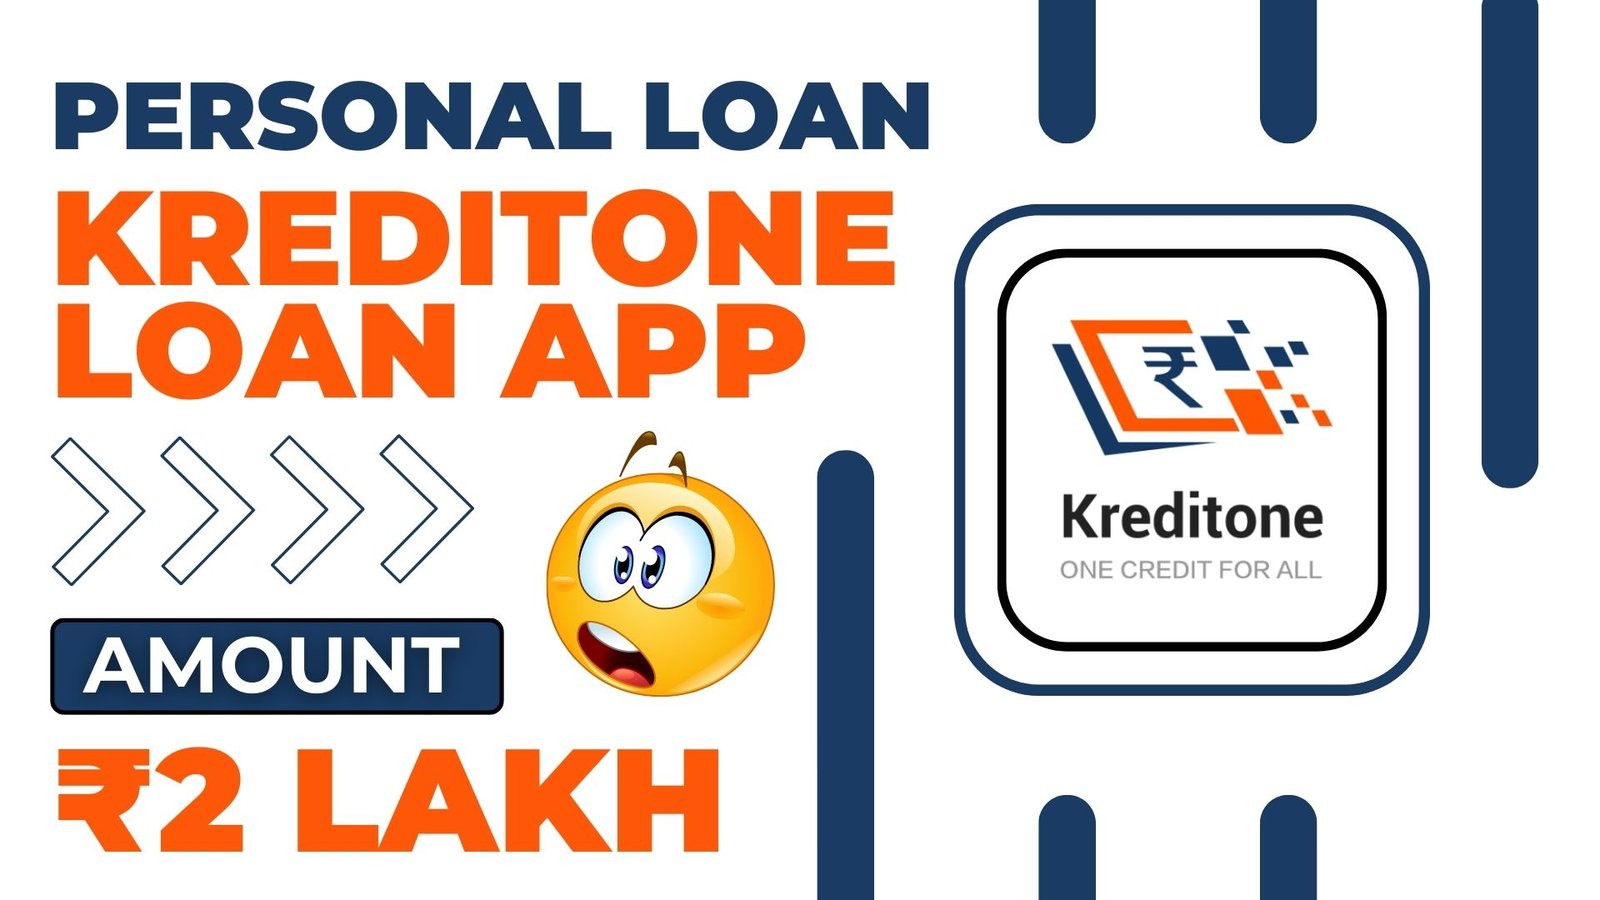 KreditOne Loan App Loan Amount